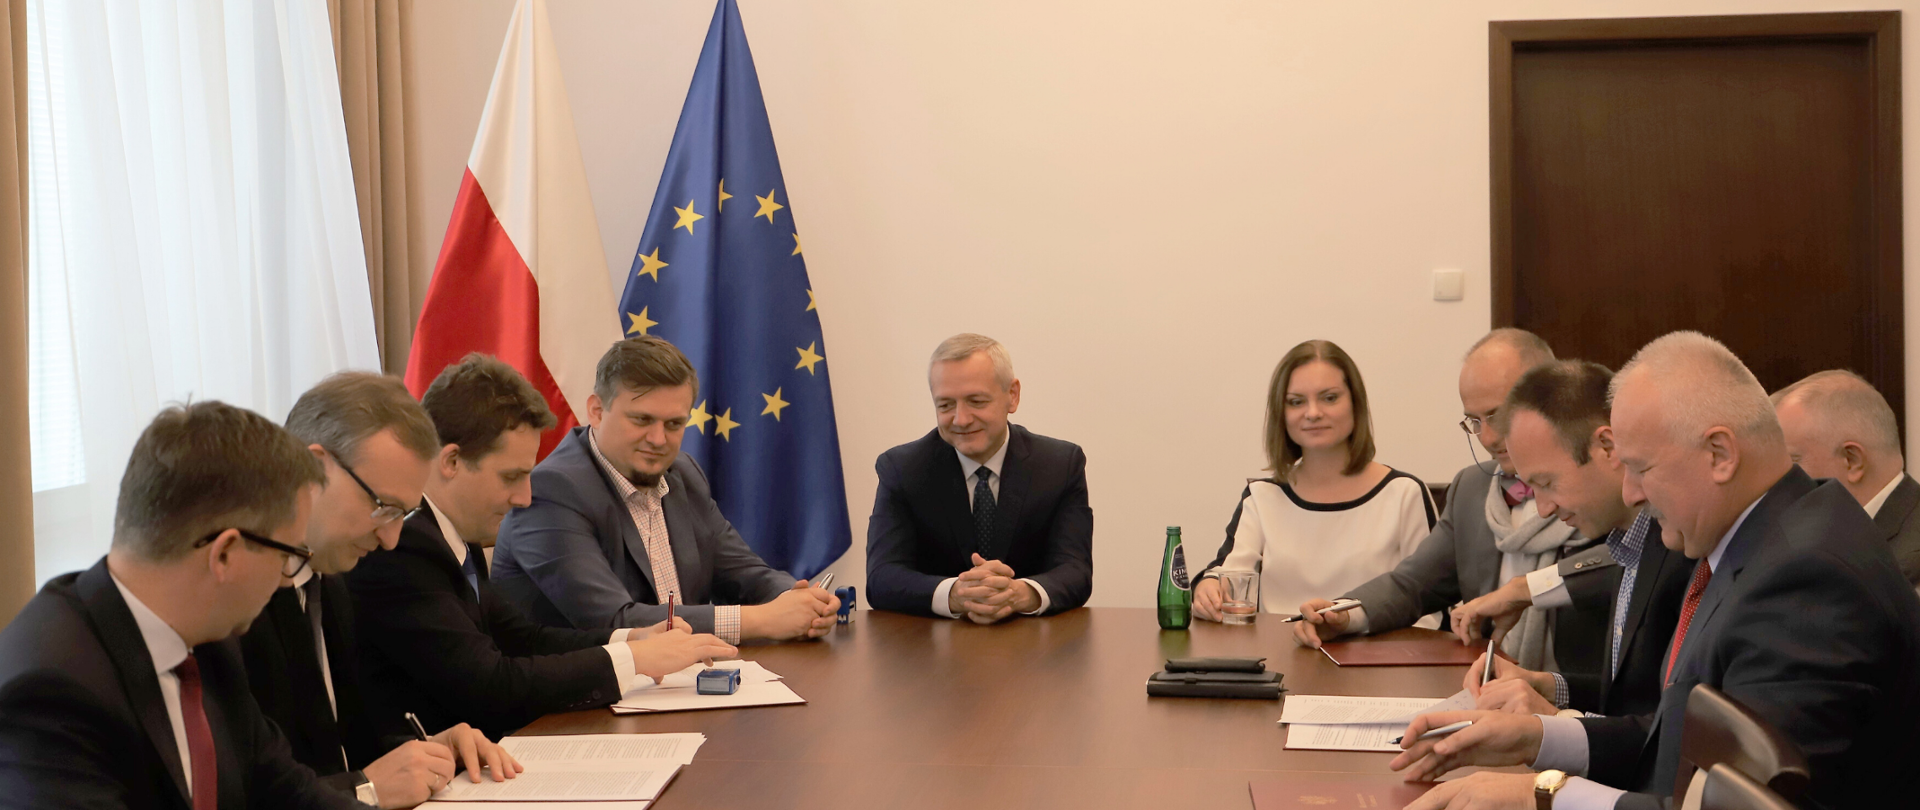 Przy owalnym stole siedzi kilka osób. Część z nich podpisuje dokumenty. Na środku siedzi minister Marek Zagórski. Za nim stoją flagi polska i unijna.